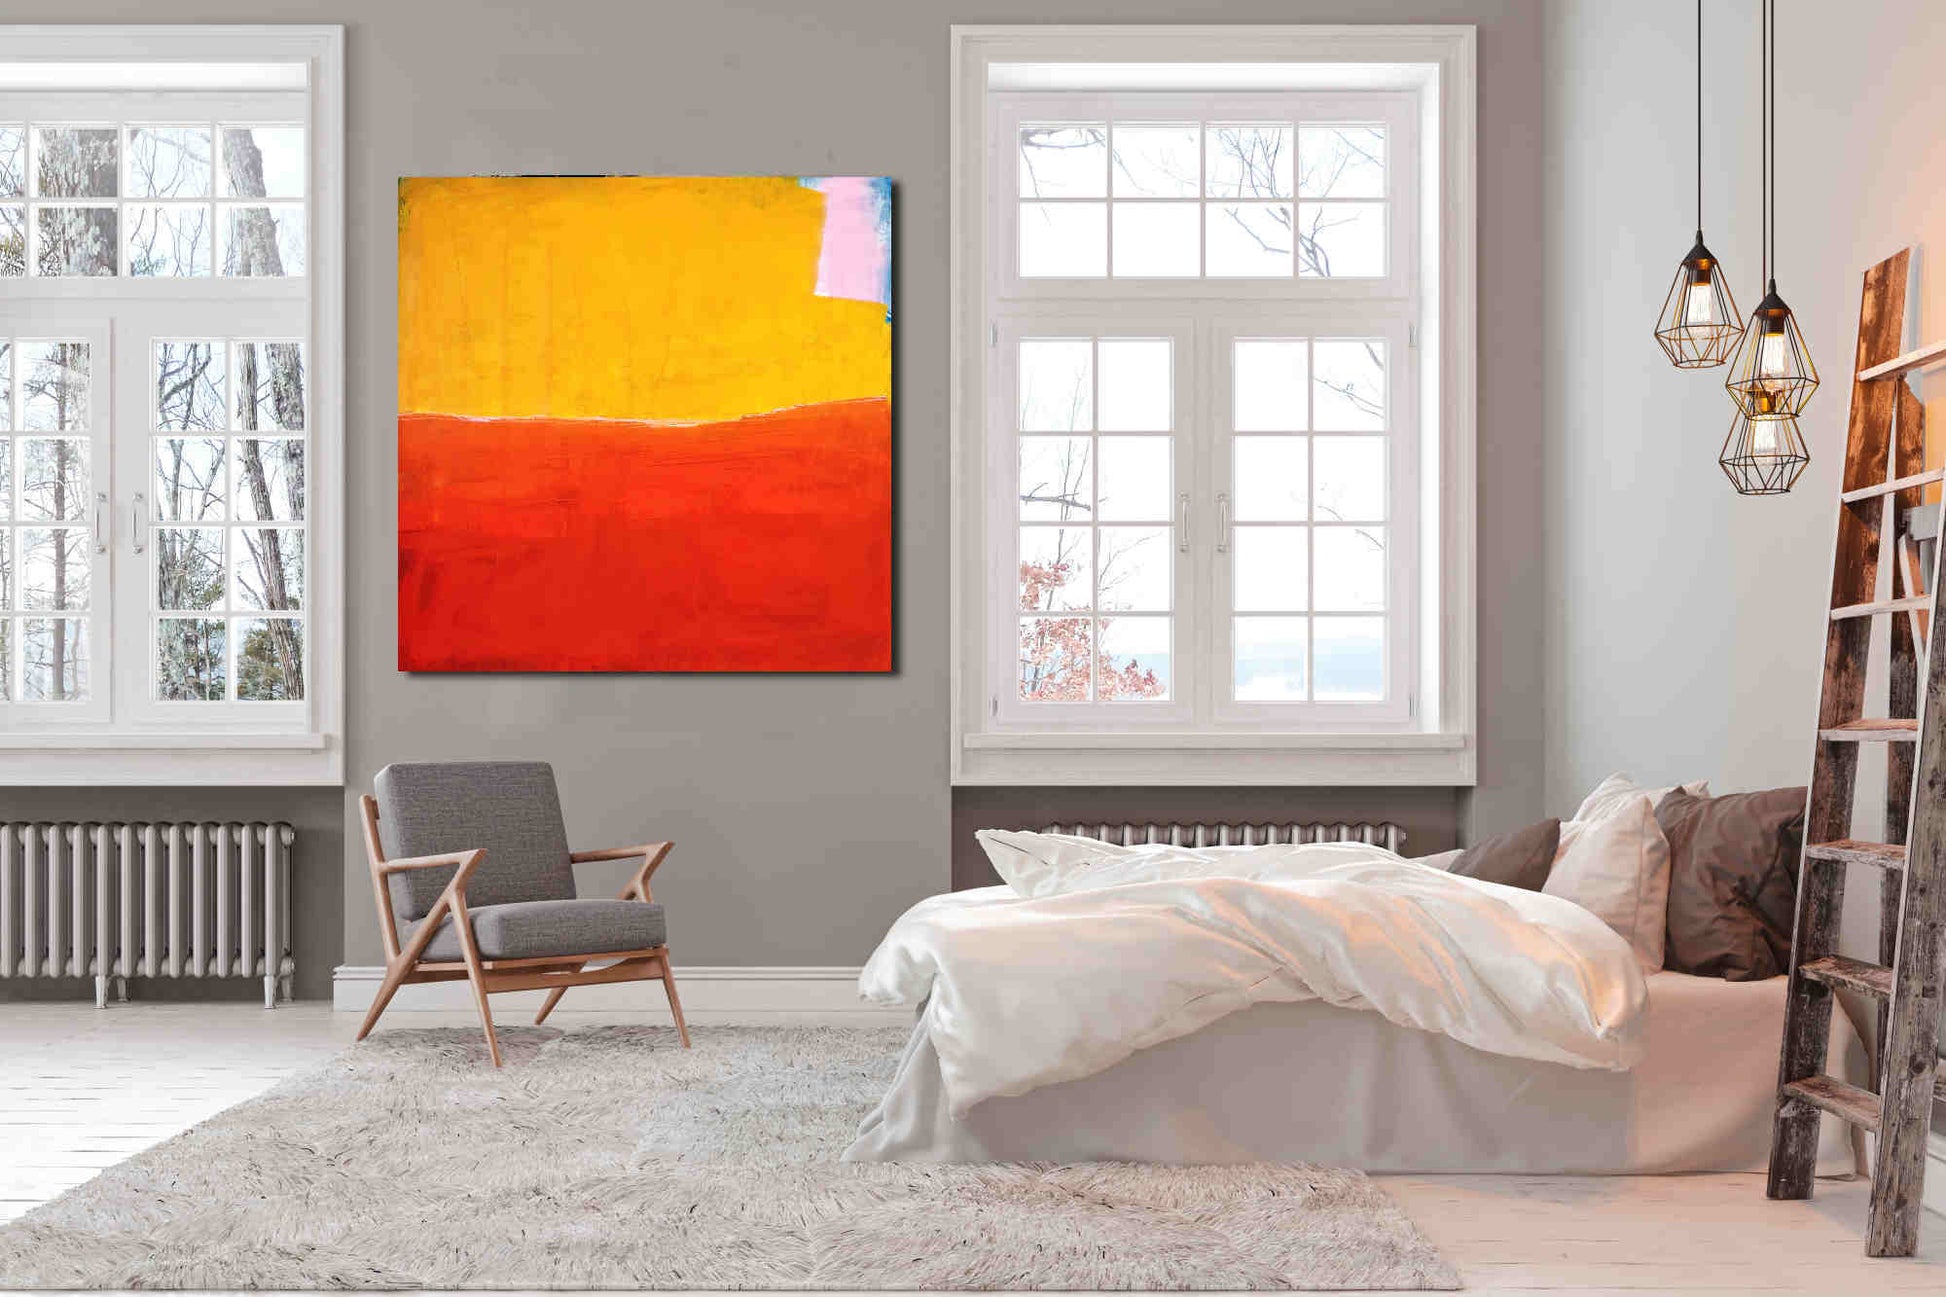  Sonnenglühen am Horizont / 160 x 160 cm / orange gelb  acrylbilder auf leinwand